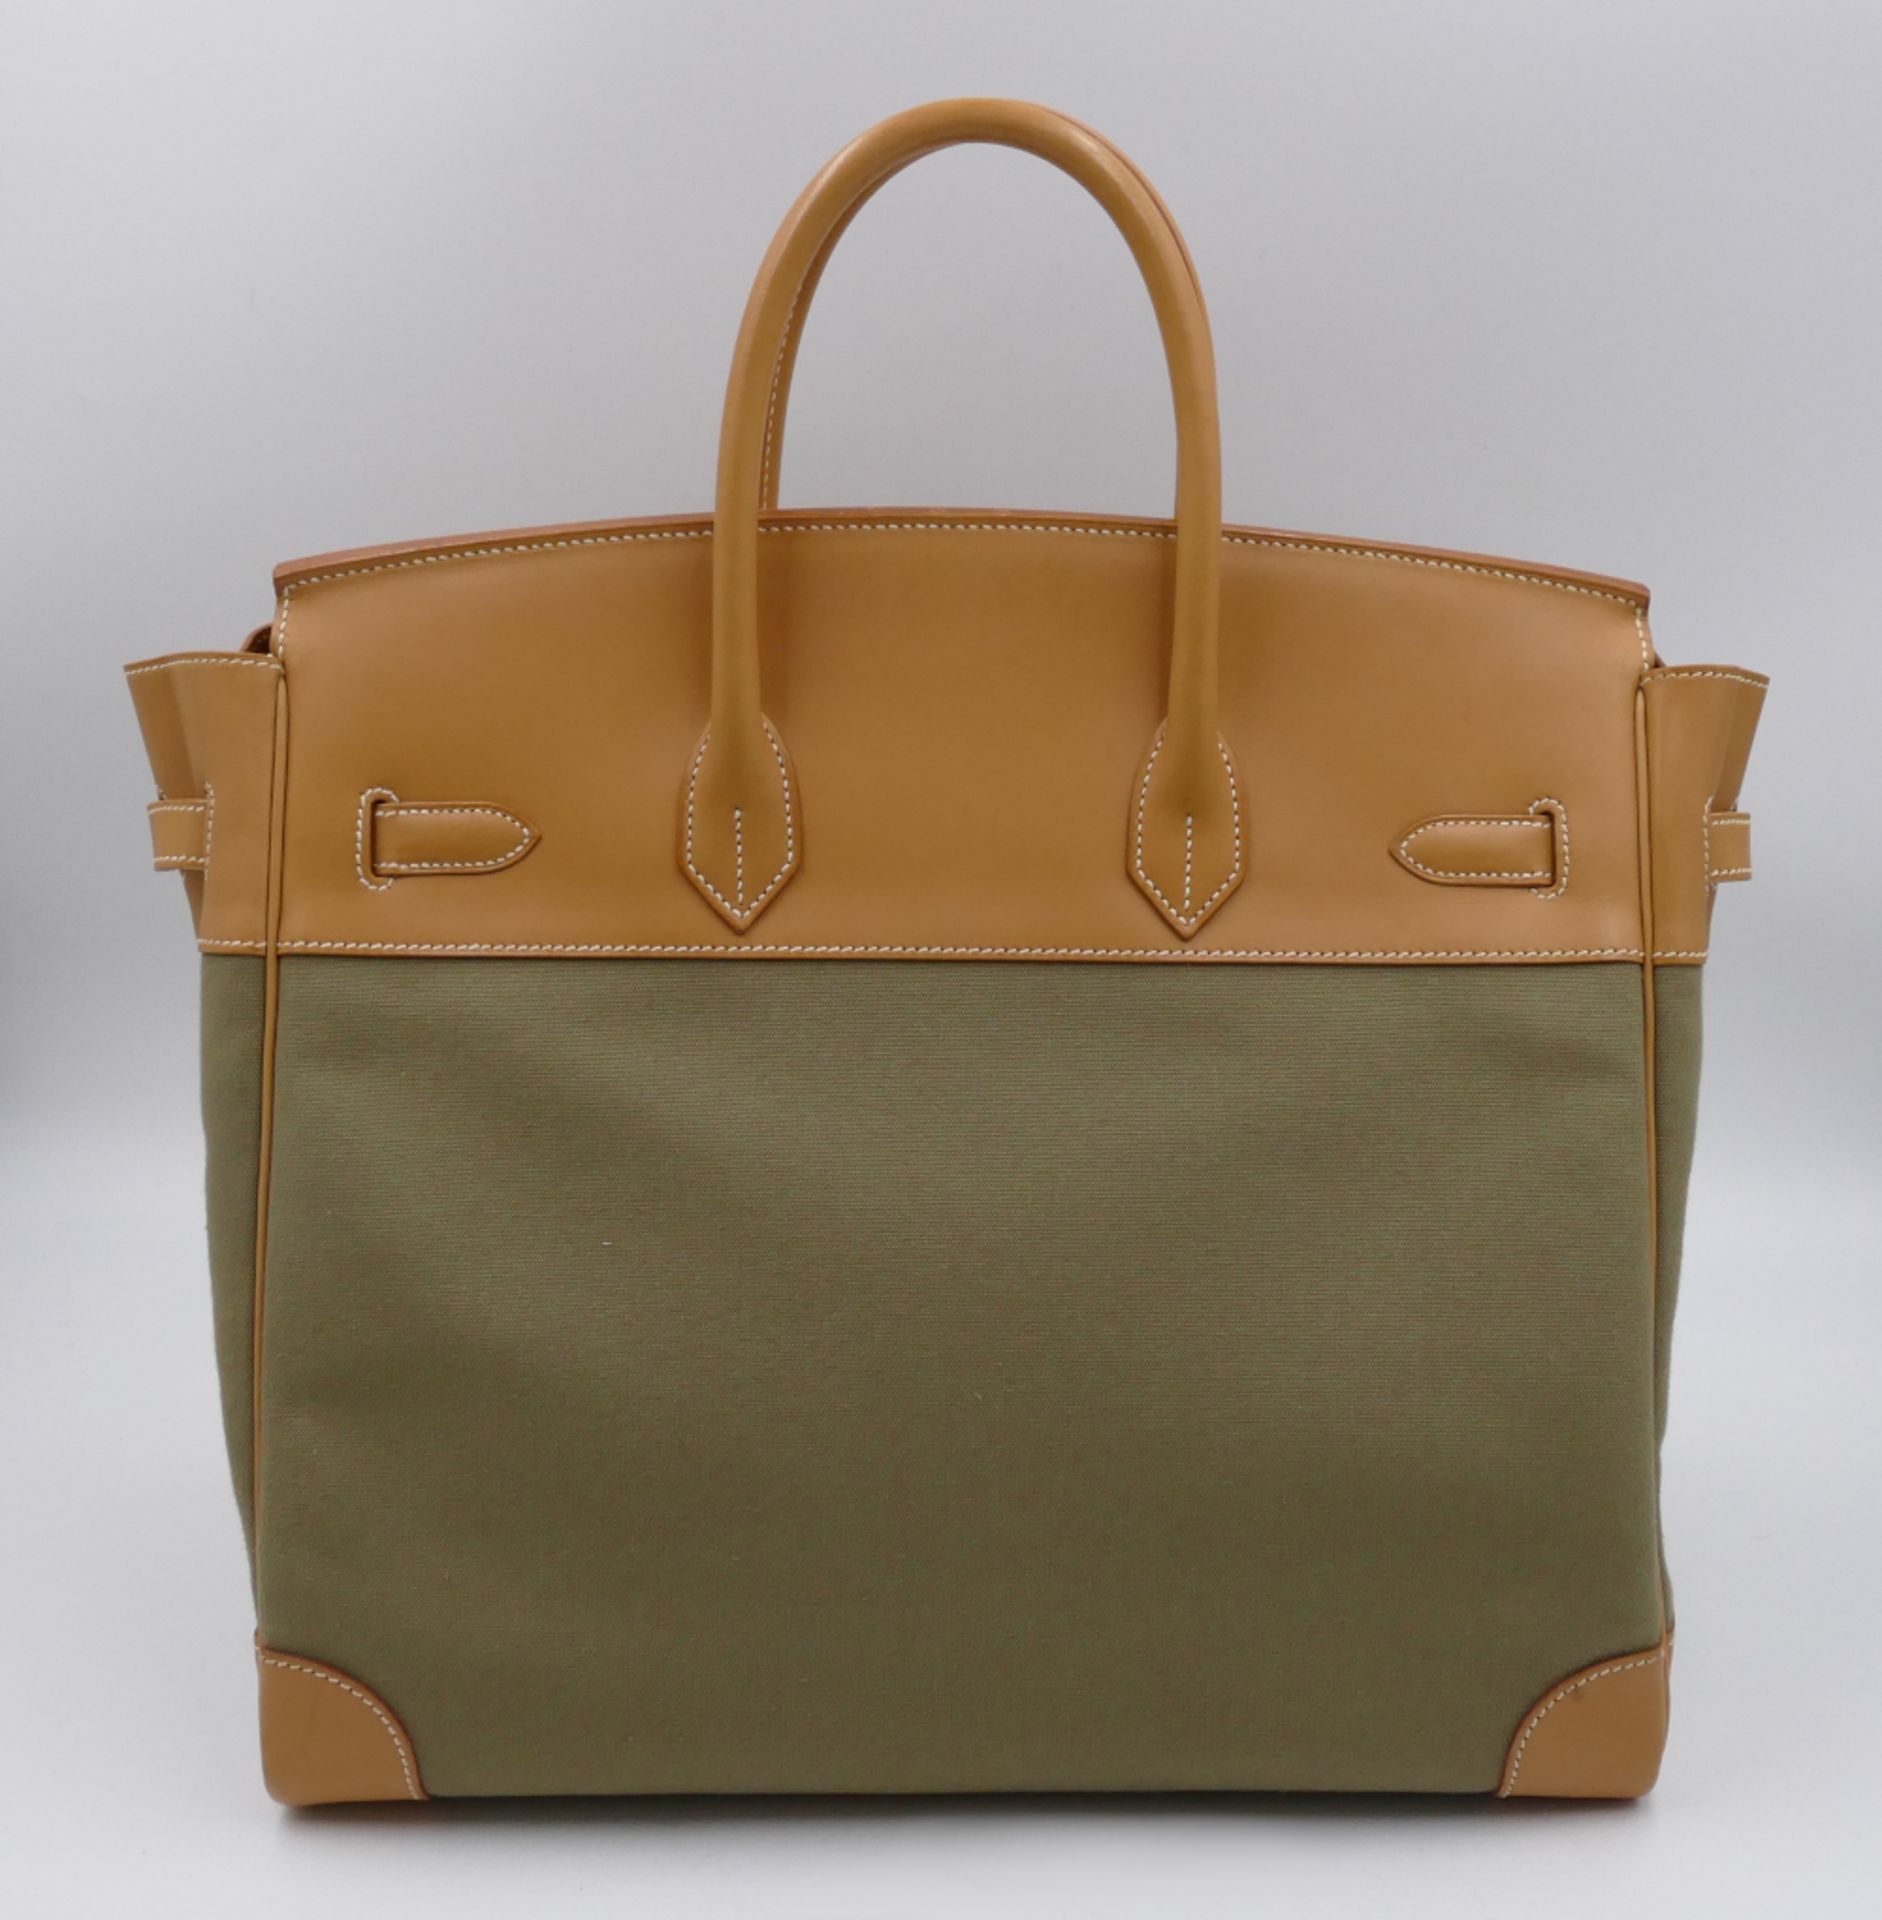 1 Handtasche HERMÈS Birkin 35, blassgrünes Textil mit hellem Leder, innen gelbes Ziegenleder, Schlüs - Bild 2 aus 7